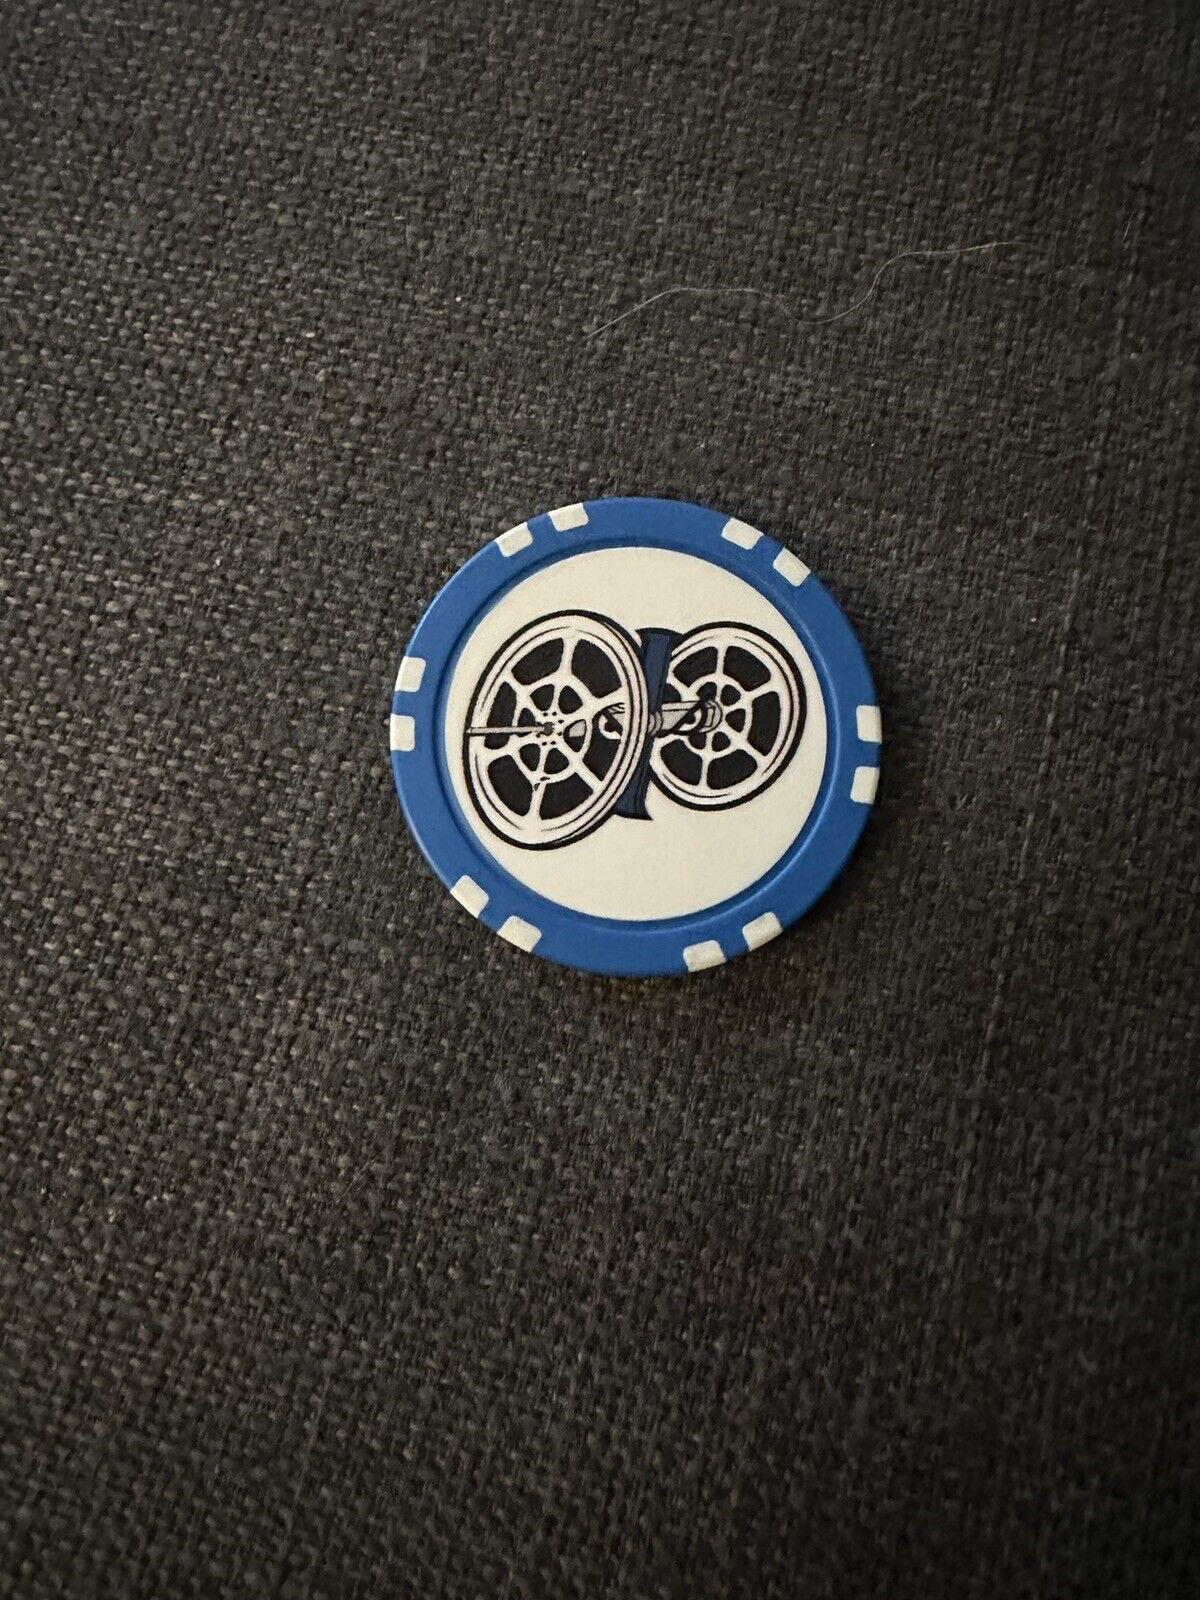 battlebots poker chip Huge